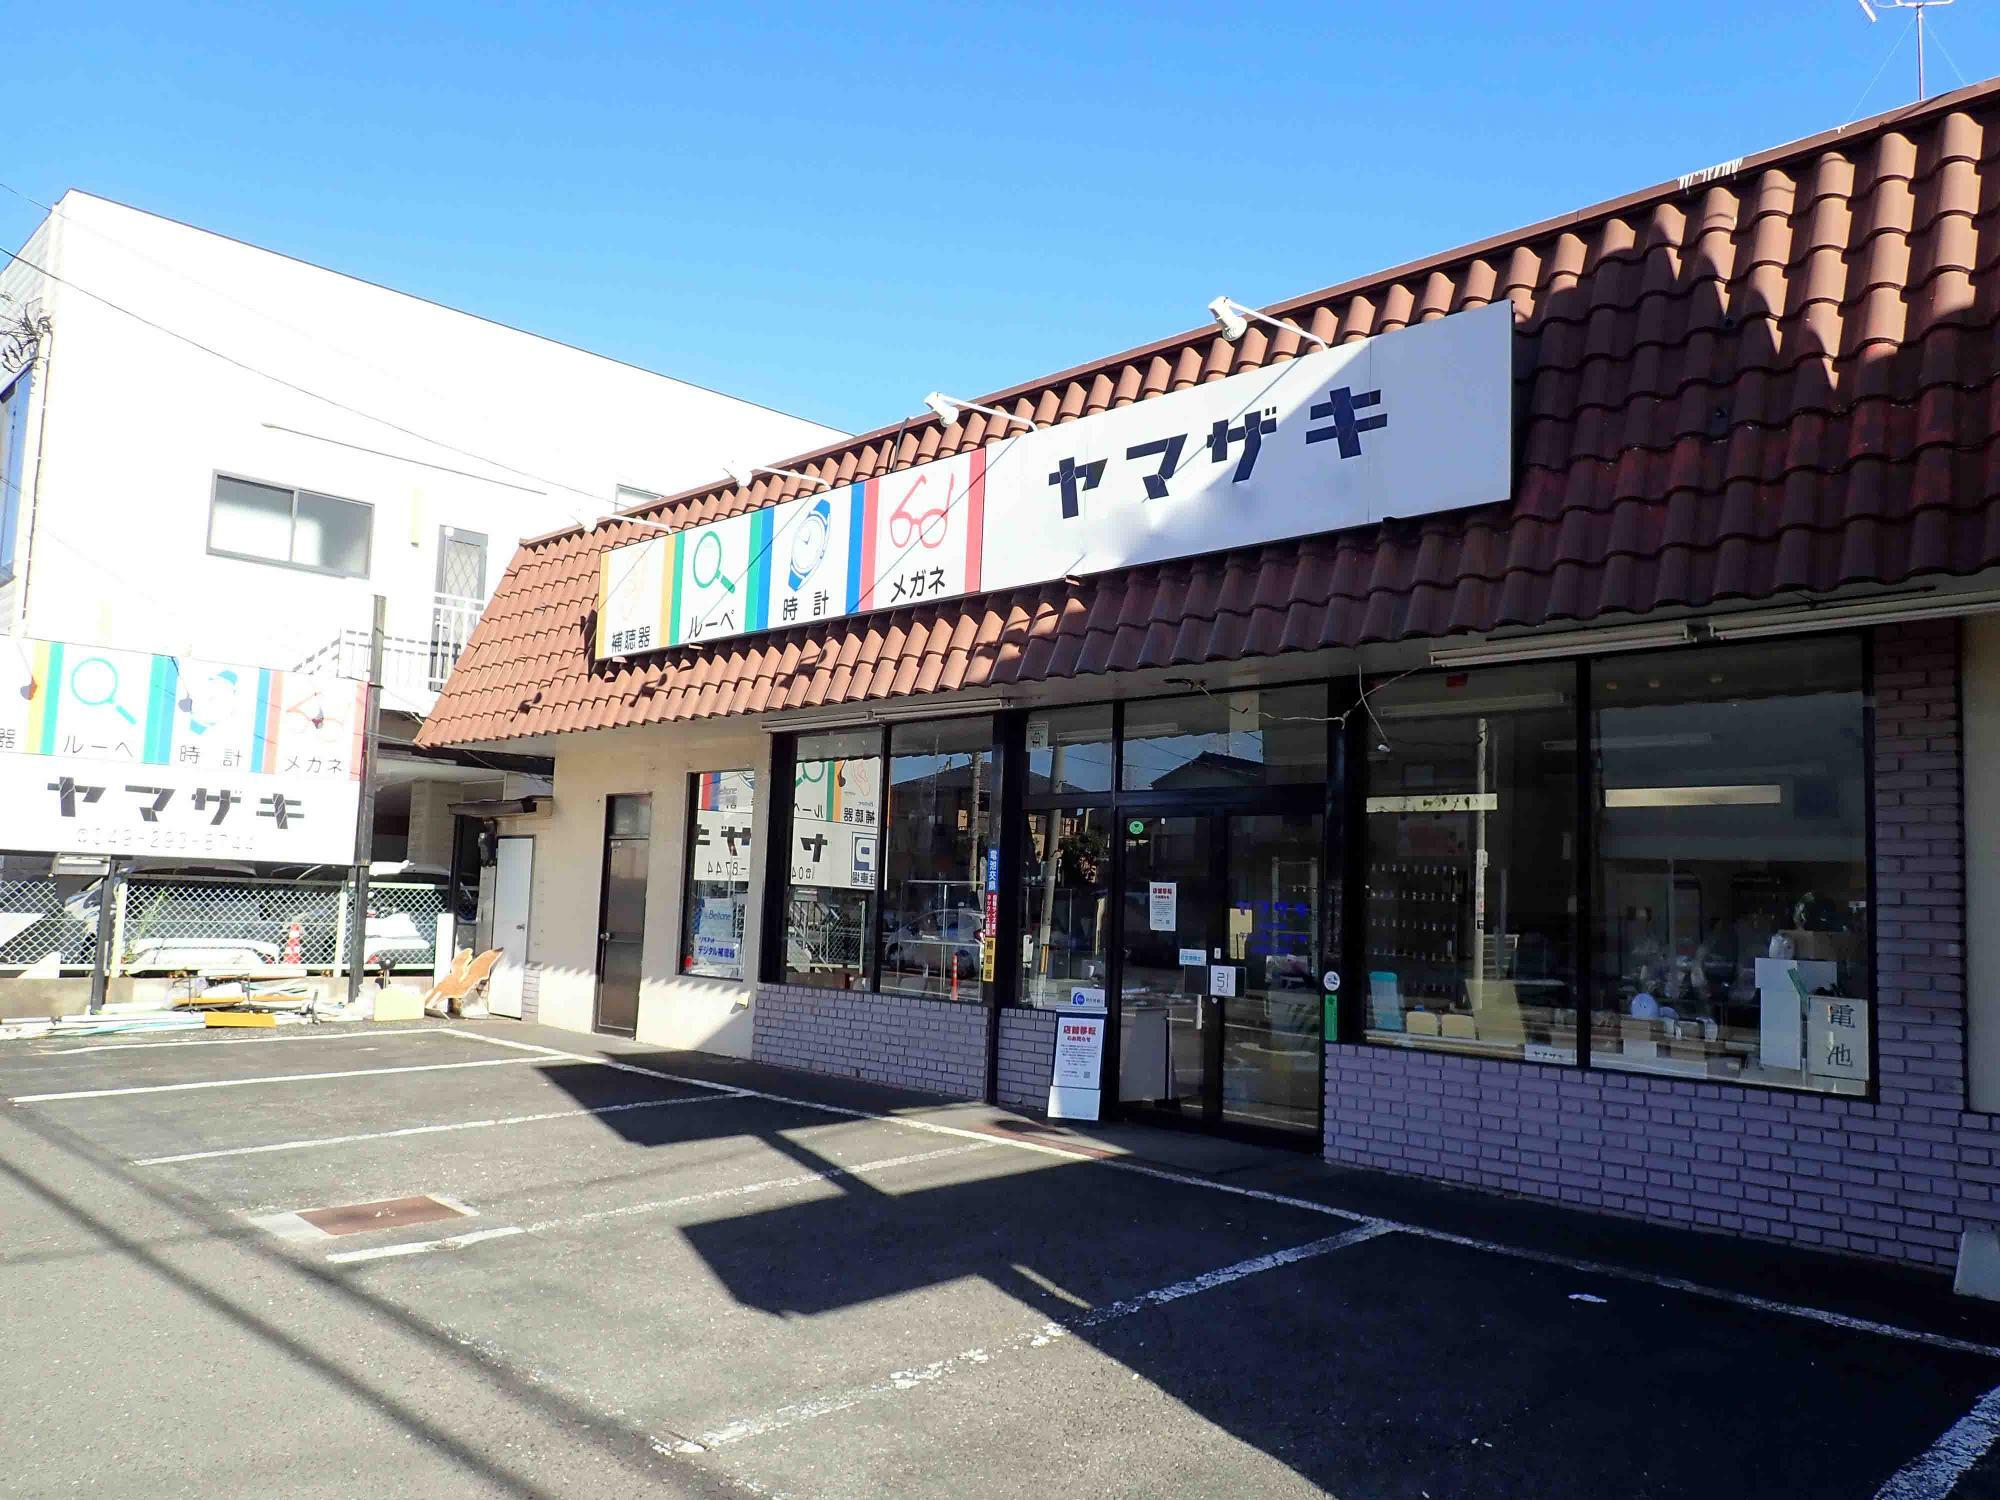 店舗の場所は埼玉県道6号川越所沢線沿いです